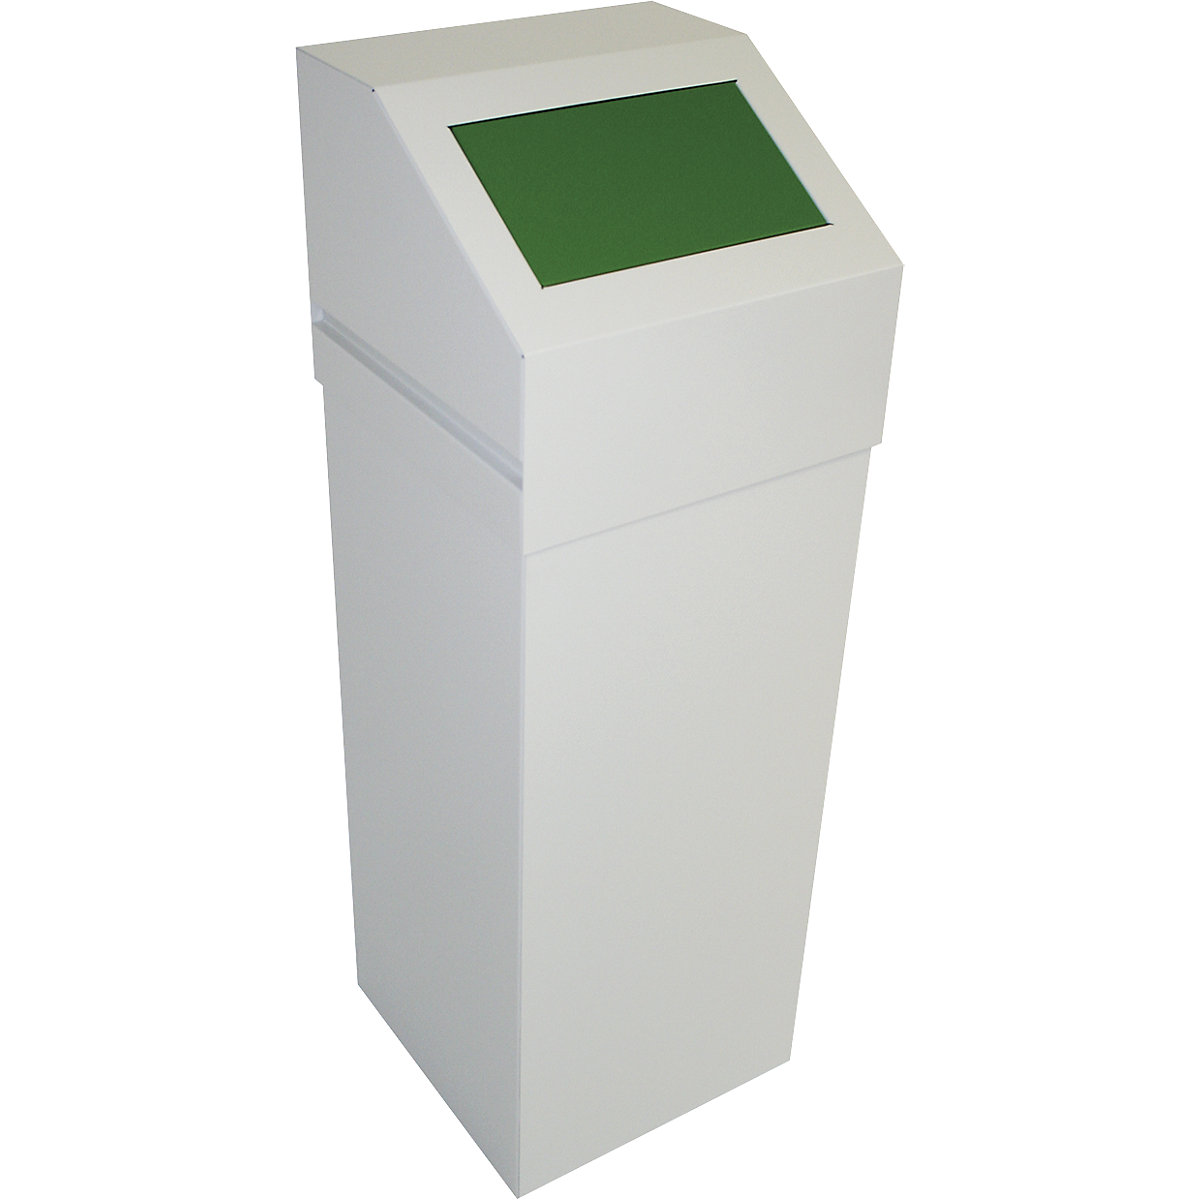 Sustav za odvajanje otpada, volumen 65 l, s poklopcem u zelenoj boji